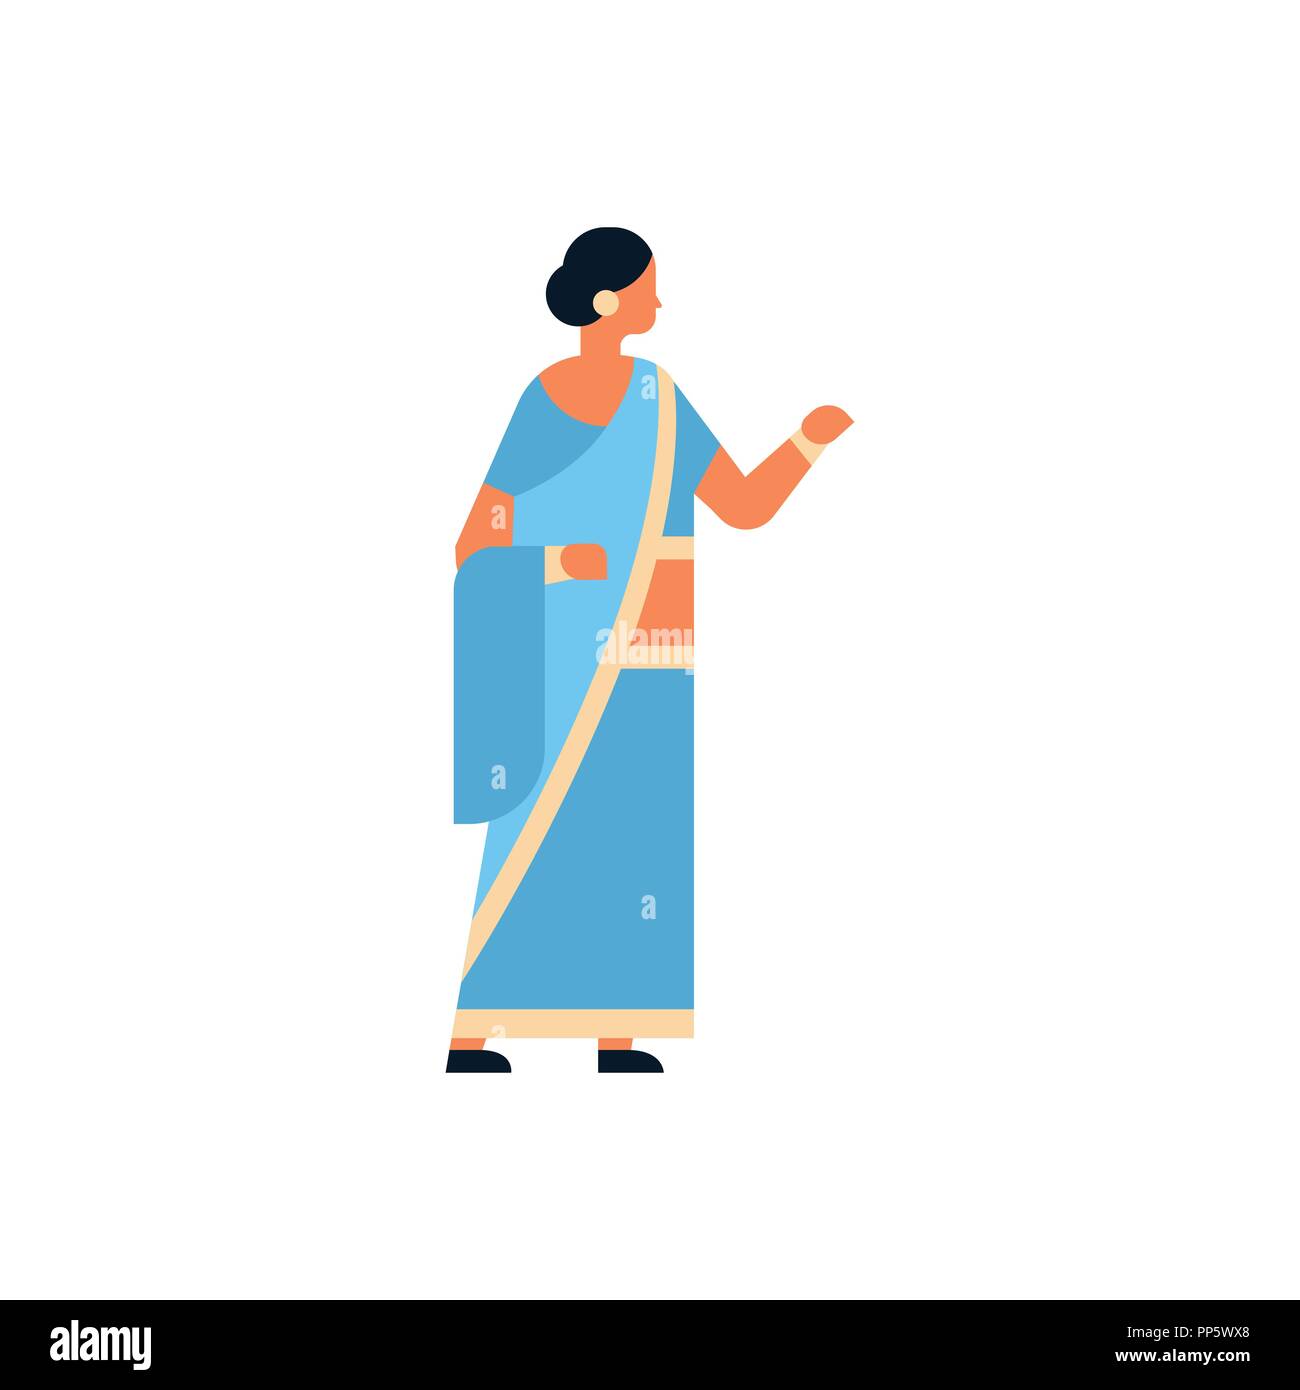 Femme indienne portant des vêtements traditionnels des femmes hindoues sari personnage télévision isolé pleine longueur Illustration de Vecteur